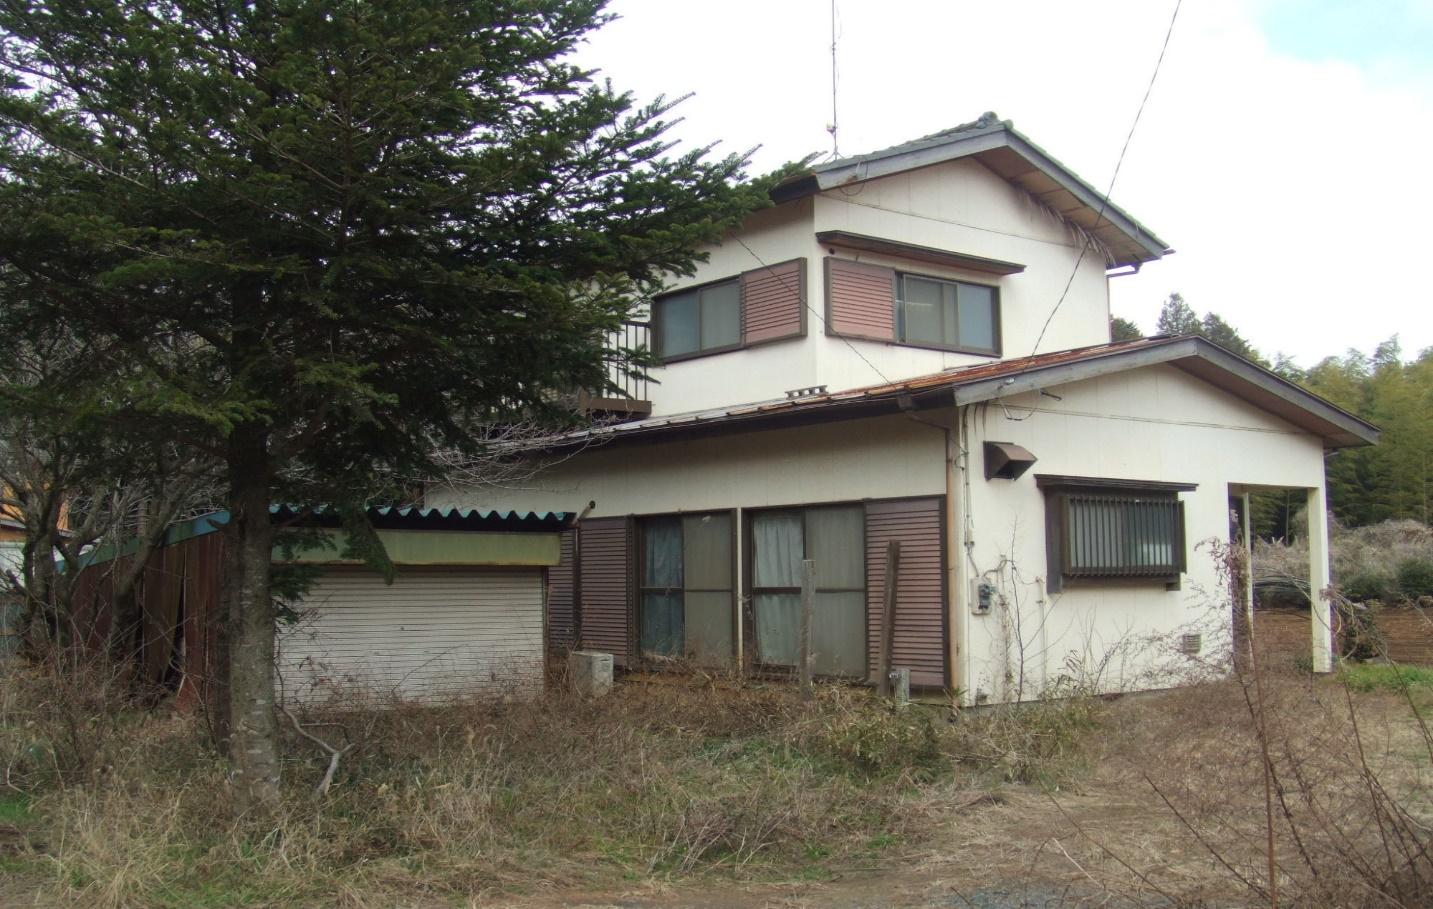 Chuyện ngược đời ở Nhật Bản: Nơi đông đúc, chỗ nhiều nhà bị bỏ hoang, chính quyền rao bán chỉ từ 11 triệu đồng vẫn hiếm người mua - Ảnh 2.